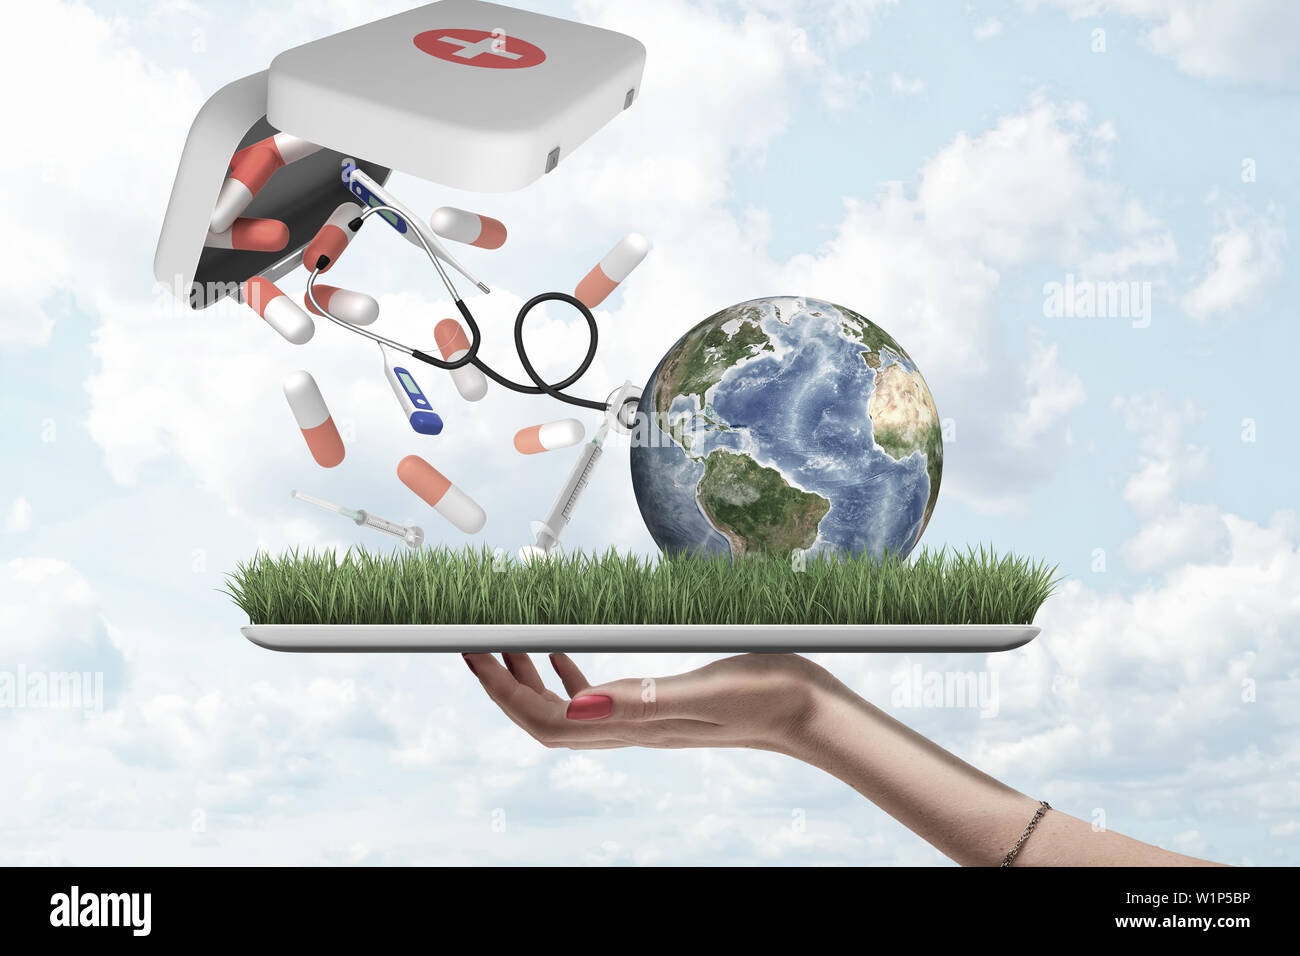 Weibliche Hand, die eine Erde Globus mit Pillen, Spritzen und digitale Thermometer fallen aus der ersten Hilfe Medical Kit auf grünem Gras Modell mit blauer Himmel Stockfoto